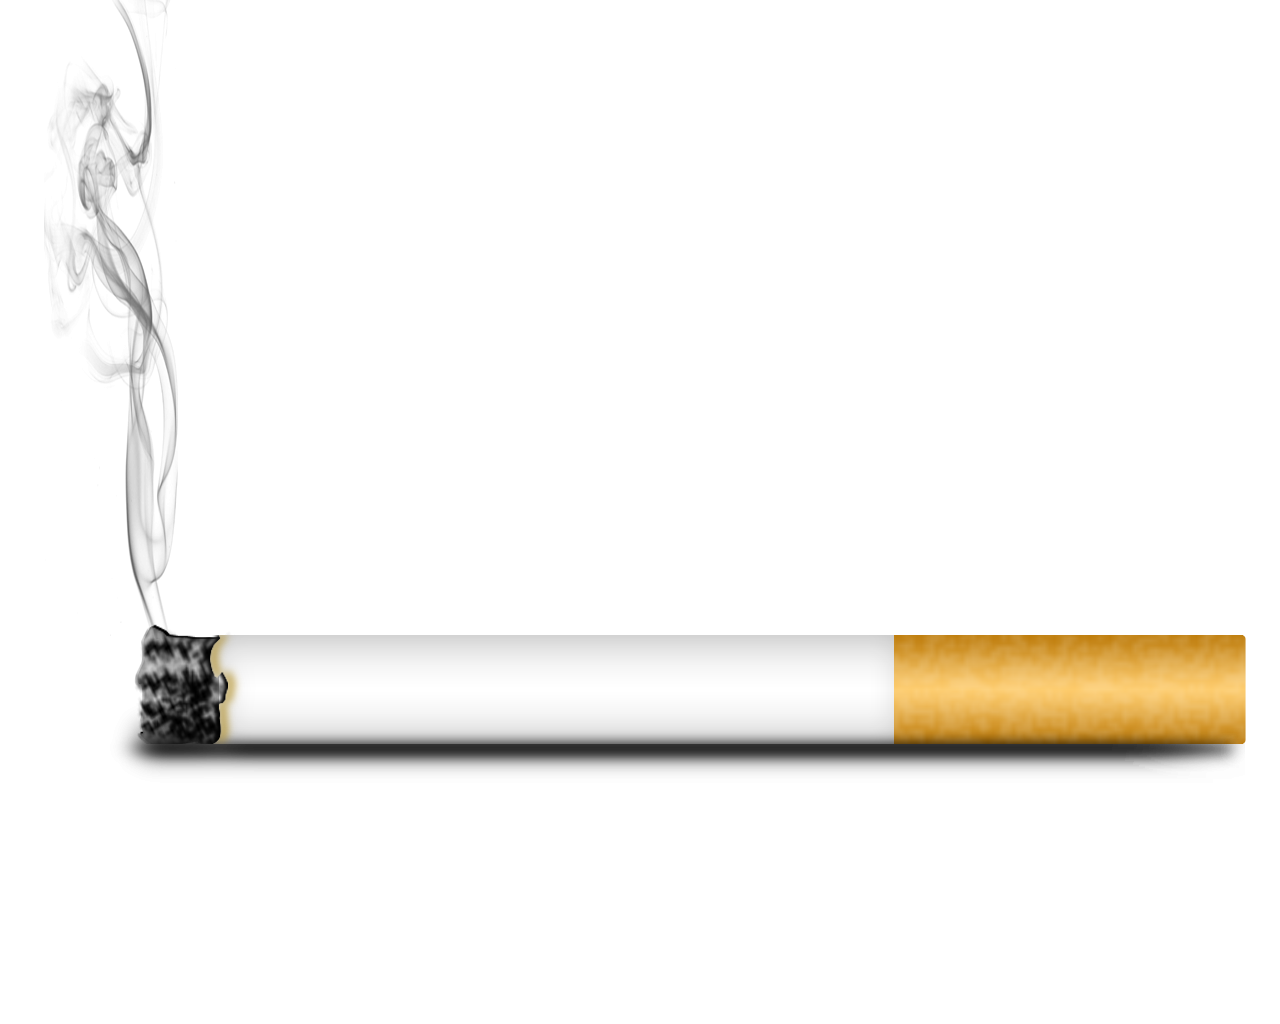 Cigar cigarette